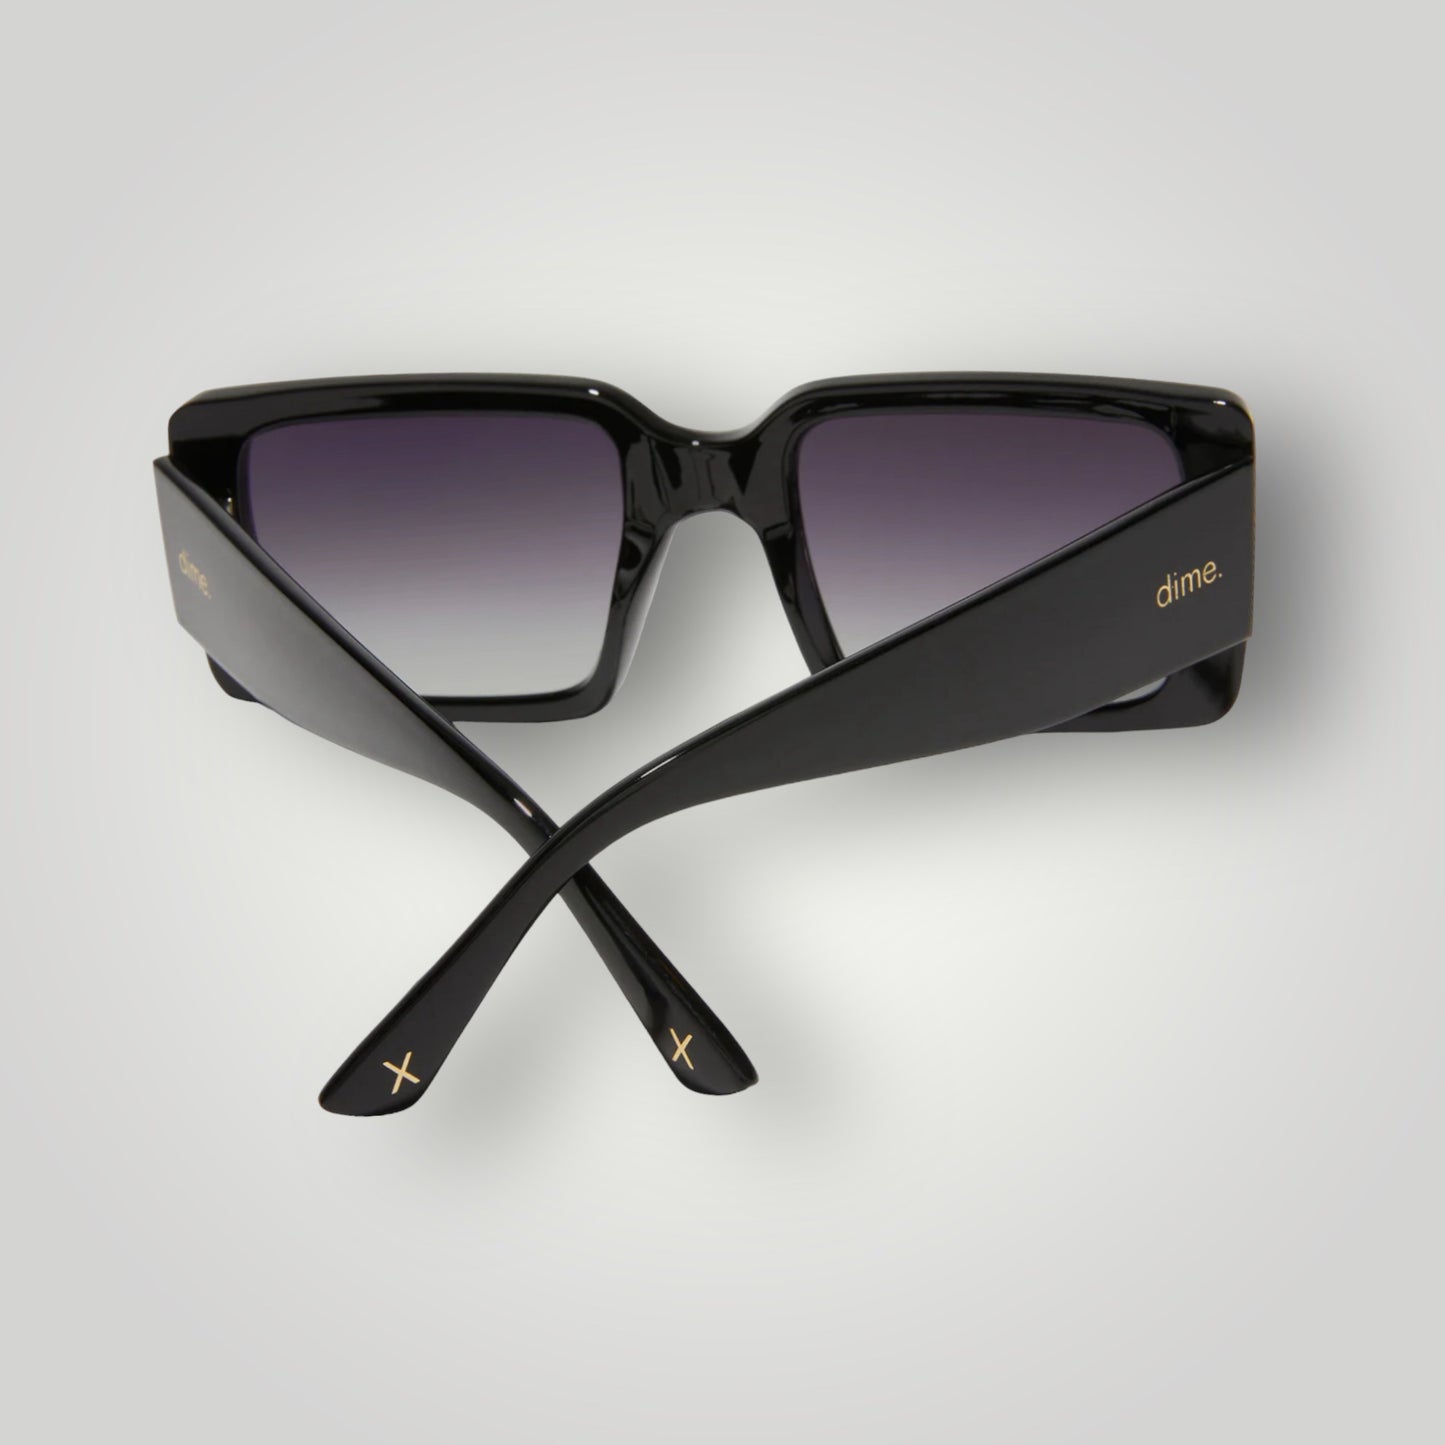 Sunset Sunglasses: black + grey polarized